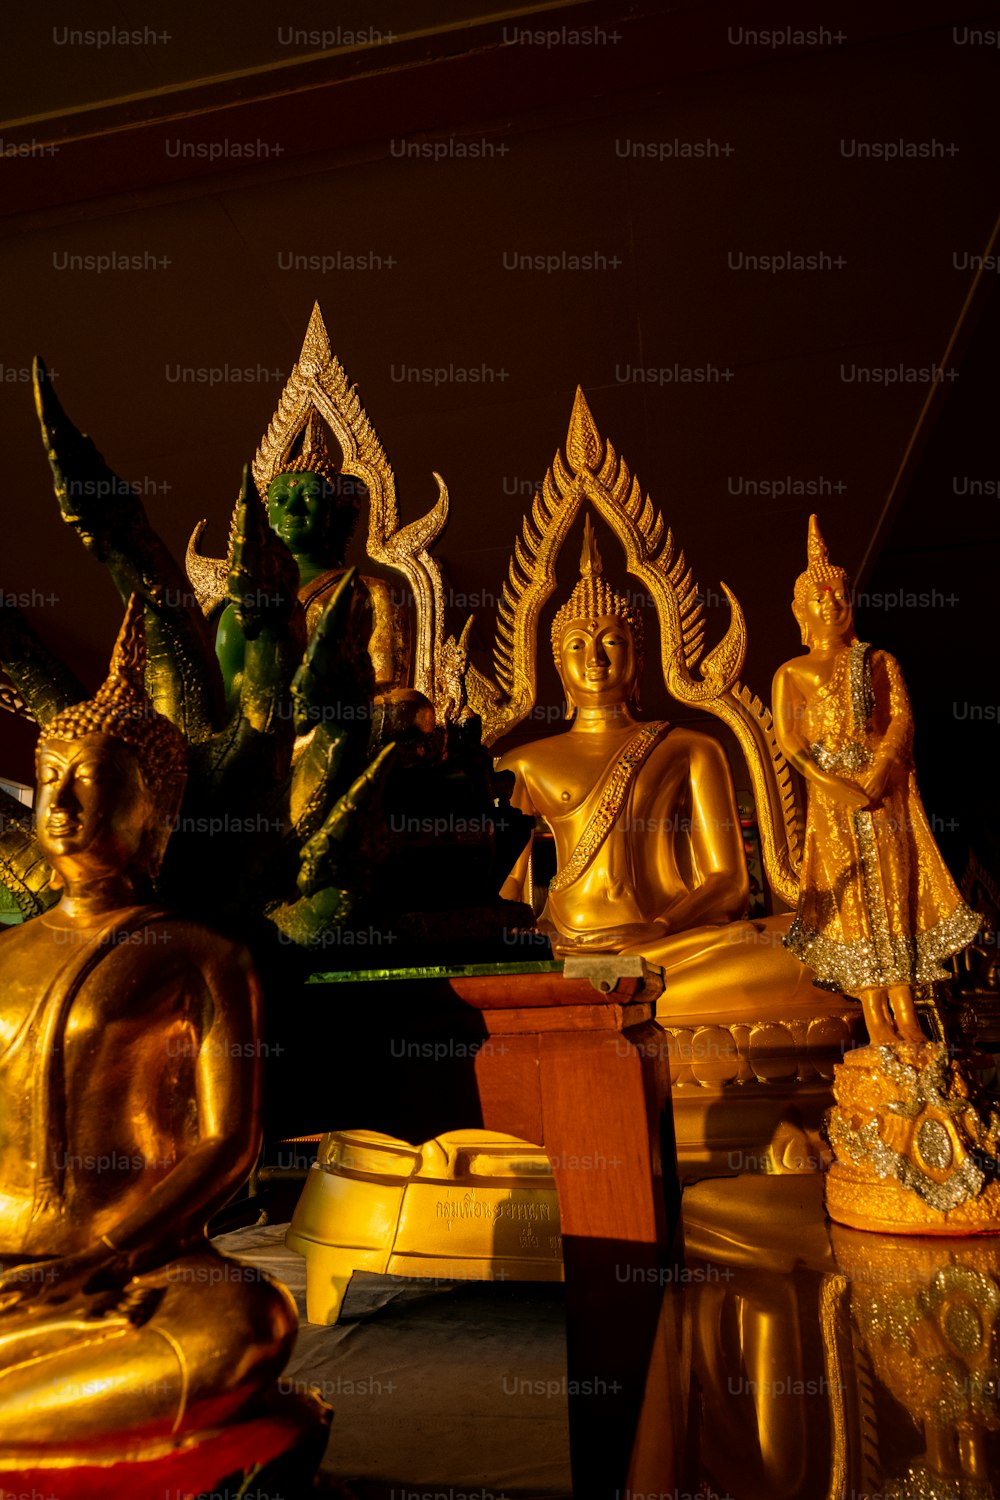 Un groupe de statues de Bouddha dorées assises sur une table